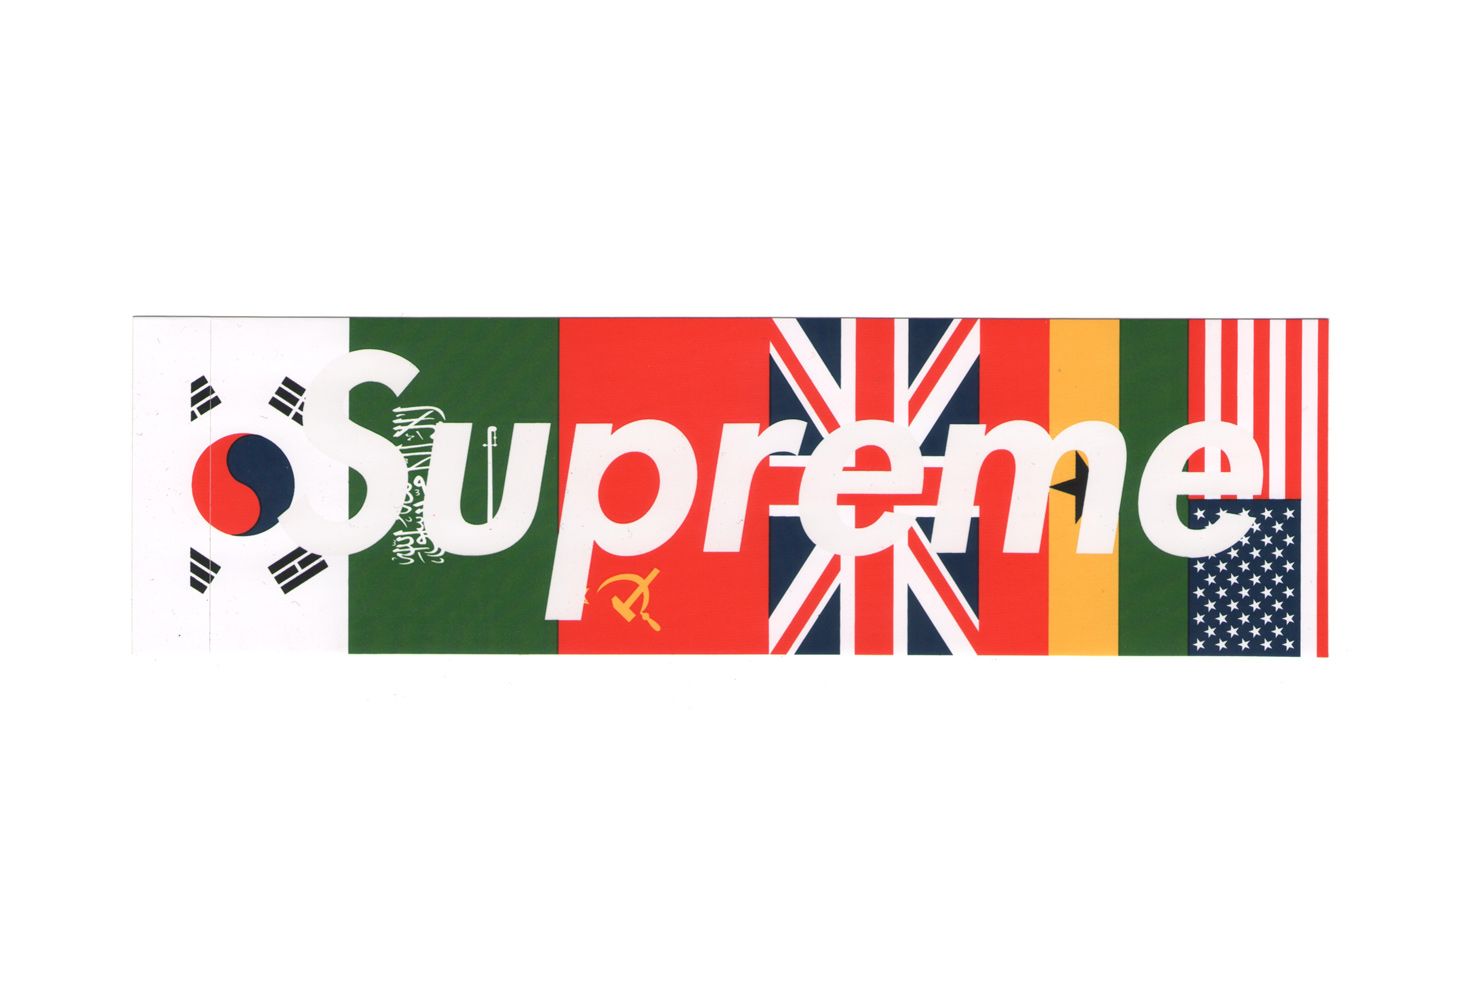 Supreme Logo - LogoDix